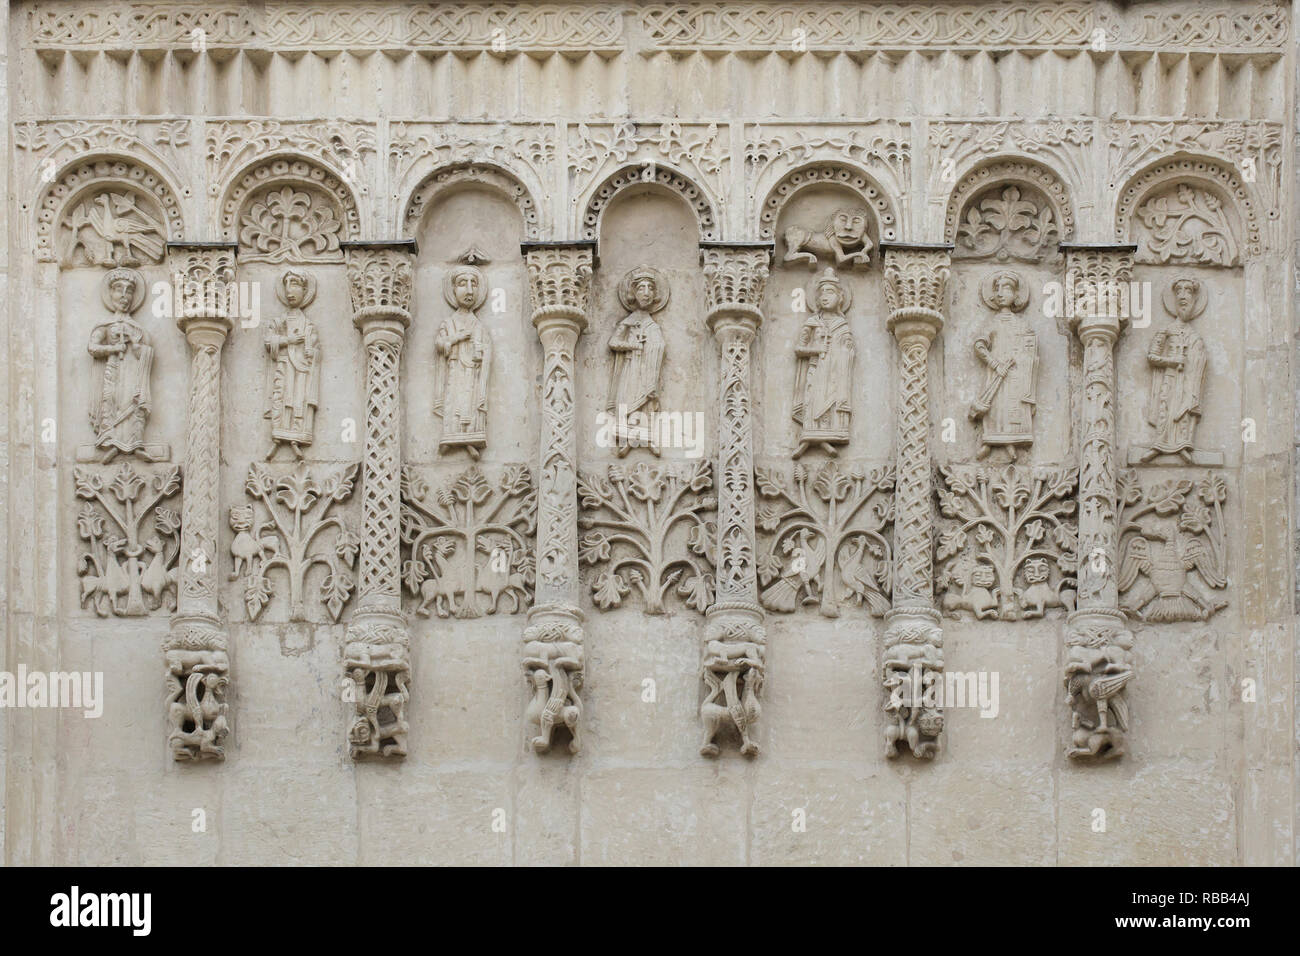 Mittelalterliche aus weißem Stein geschnitzte blind Arcade aus dem 12. Jahrhundert an der nördlichen Fassade der Kathedrale von Saint Demetrius in Wladimir, Russland. Die einzige vollständig erhaltene Fragment aus dem 12. Jahrhundert an der Fassade. Stockfoto